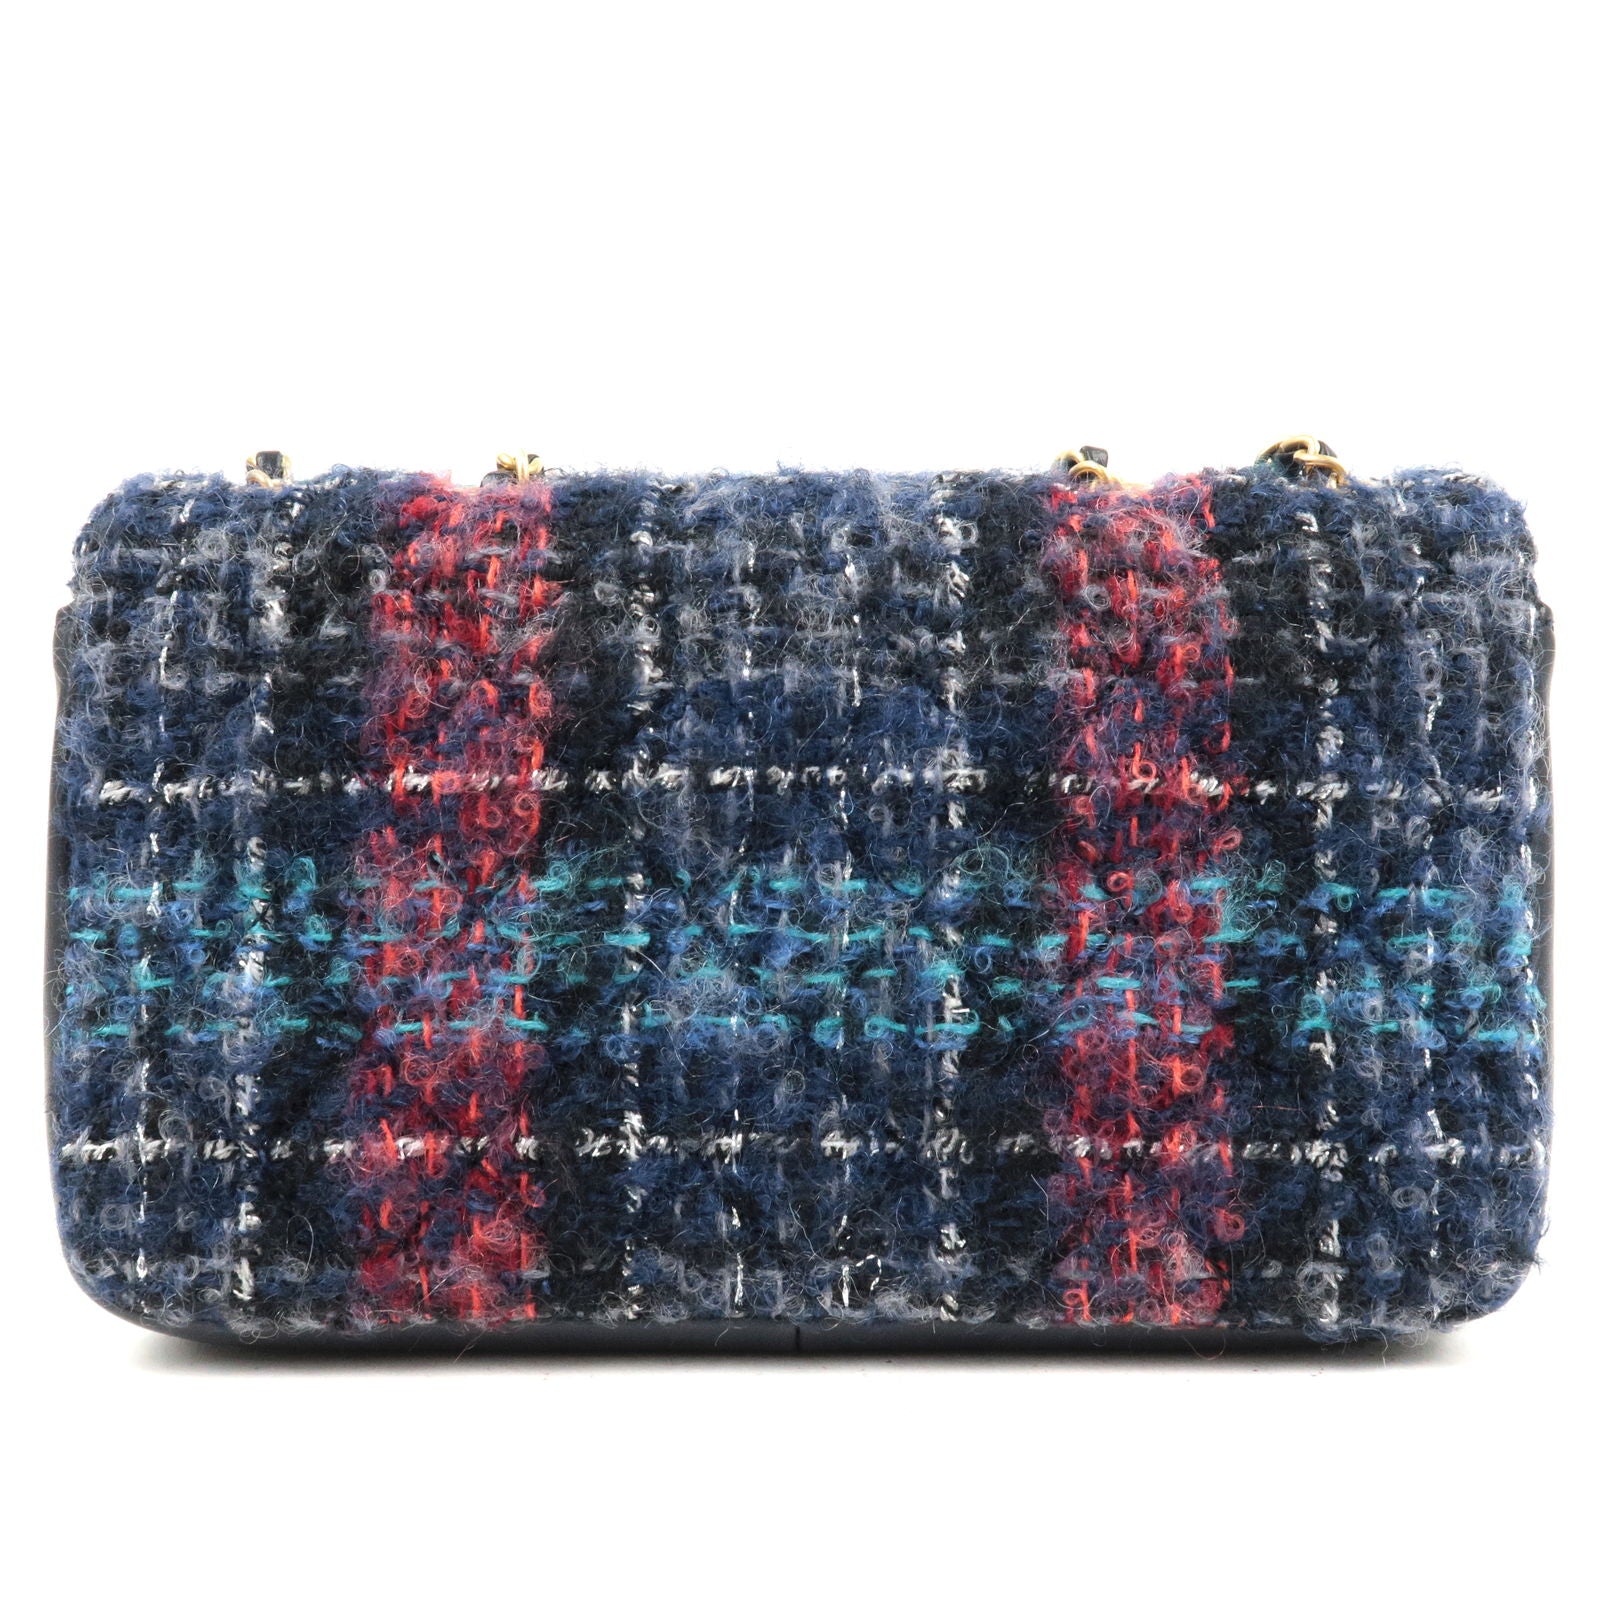 CHANEL Pre-Owned medium Crochet Flap shoulder bag - Black